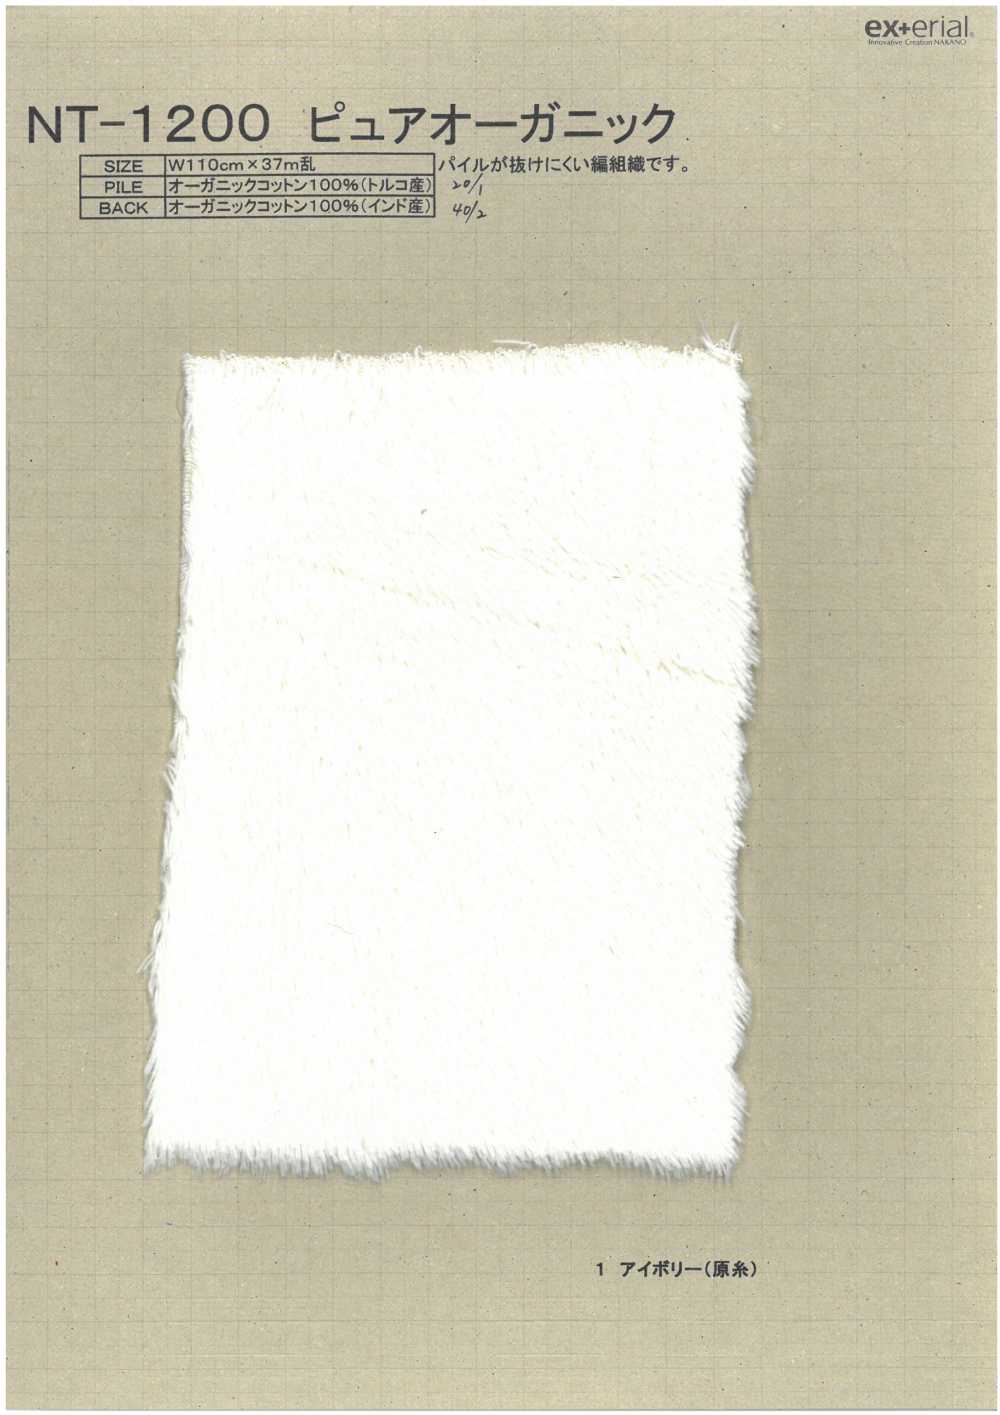 NT-1200 Lông Thủ Công [ Boa Dệt Nổi Pile Hữu Cơ][Vải] Ngành Công Nghiệp Hàng Tồn Kho Nakano